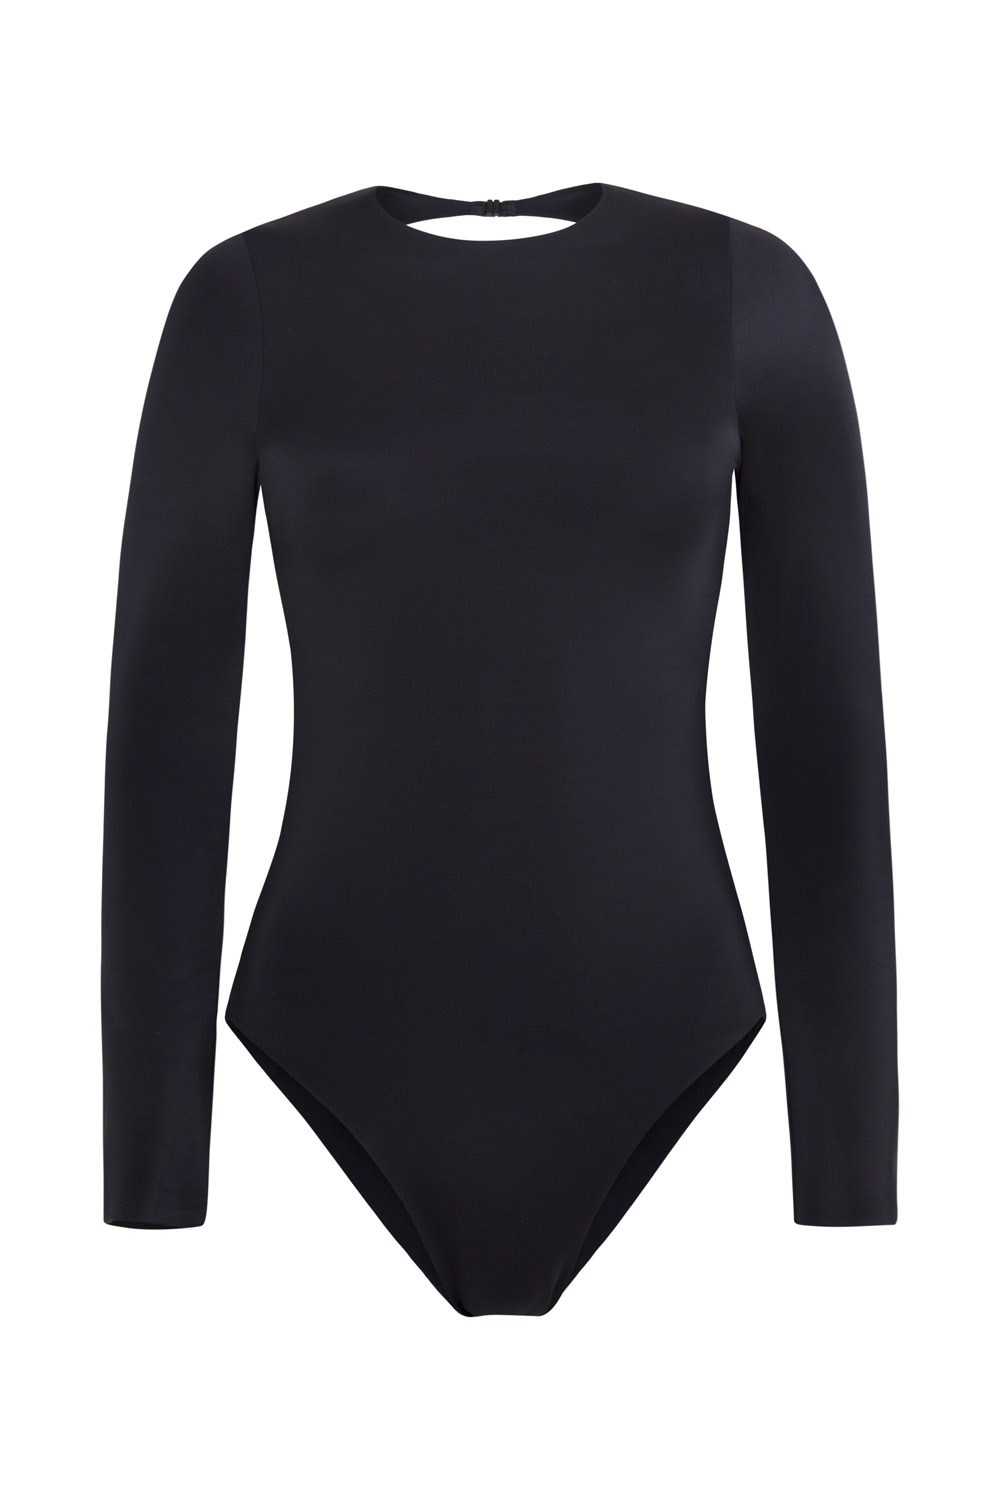 Sustainable Luxury Swimwear, Ropa de baño sostenible, bañadores reciclados, surfsuit, bañador de surf. Eugenie in black, by NOW_THEN